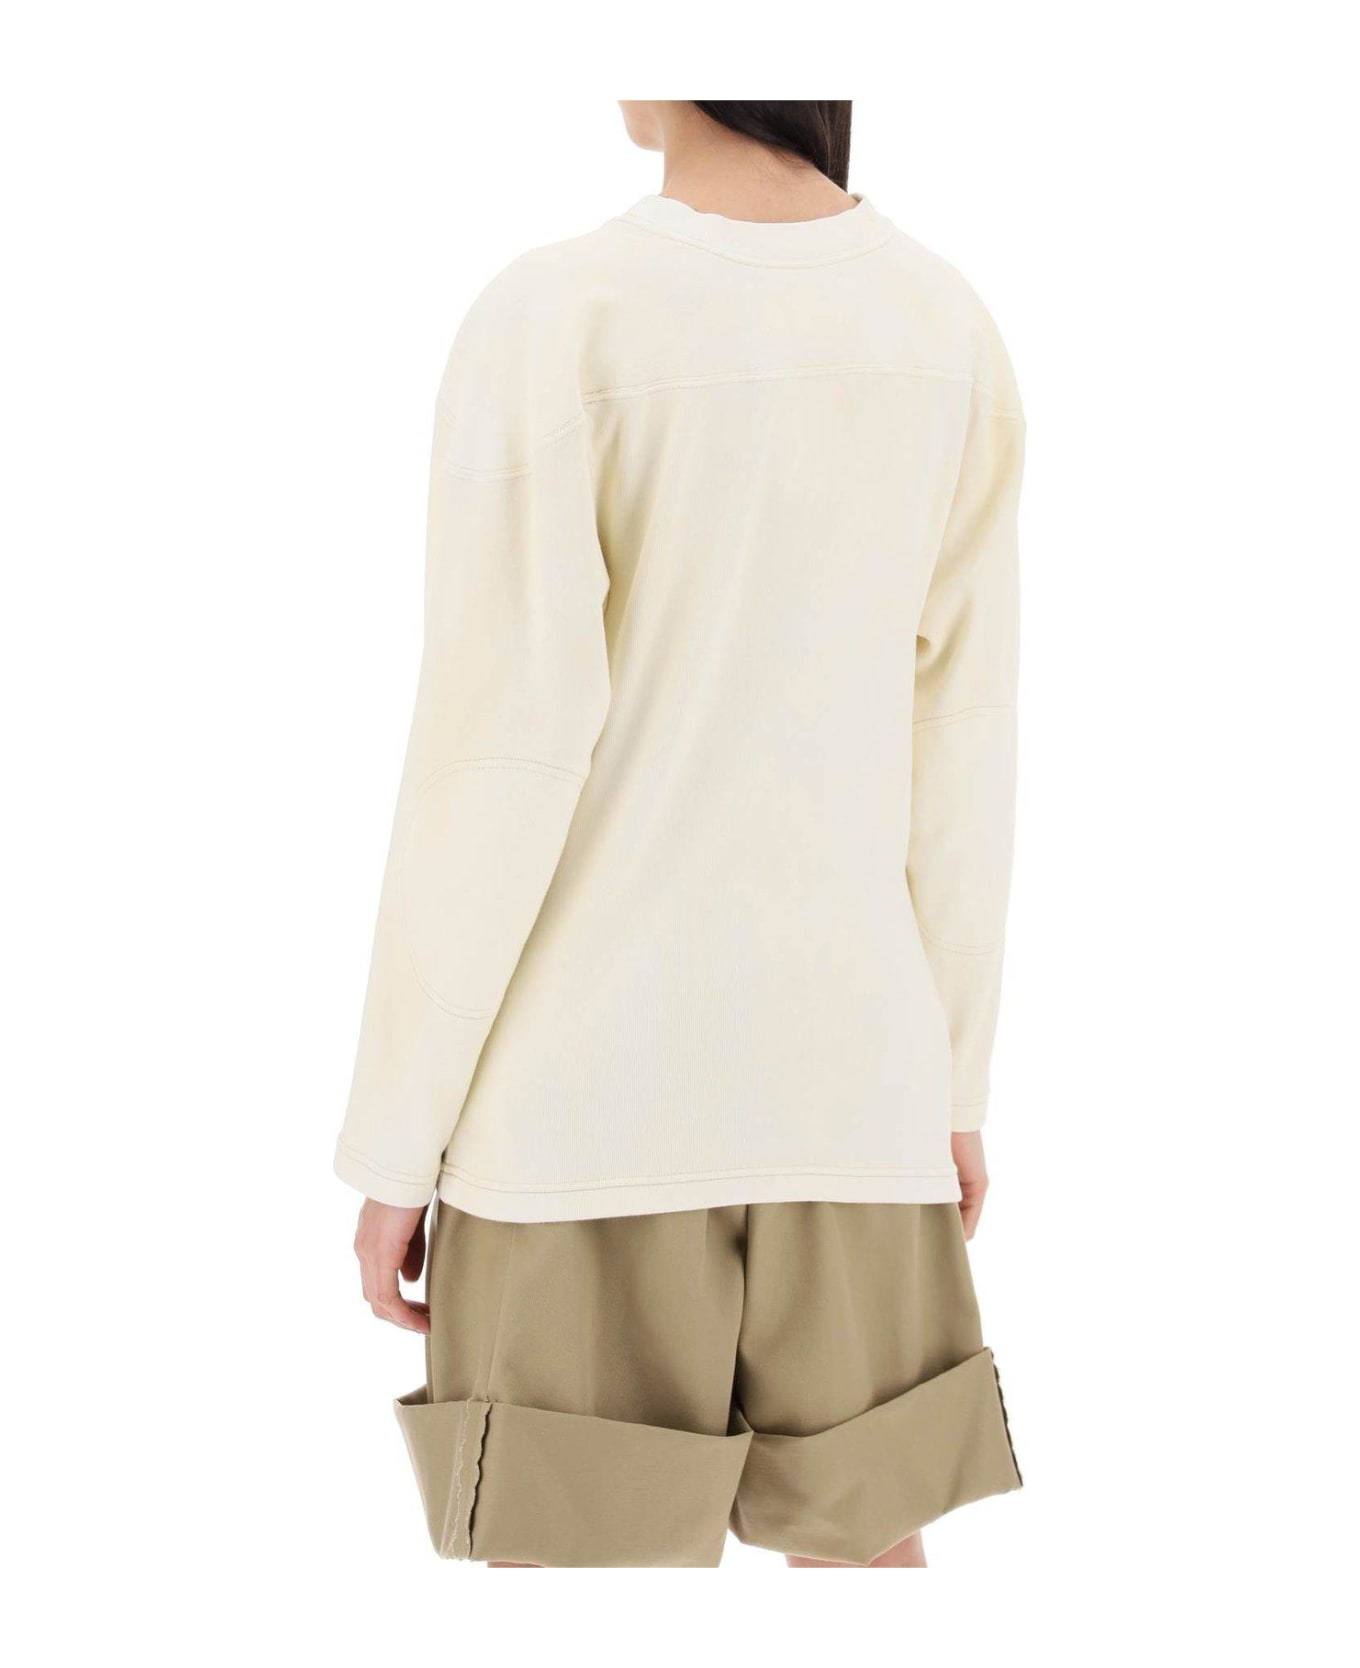 Maison Margiela Long-sleeved Crewneck Sweatshirt - White